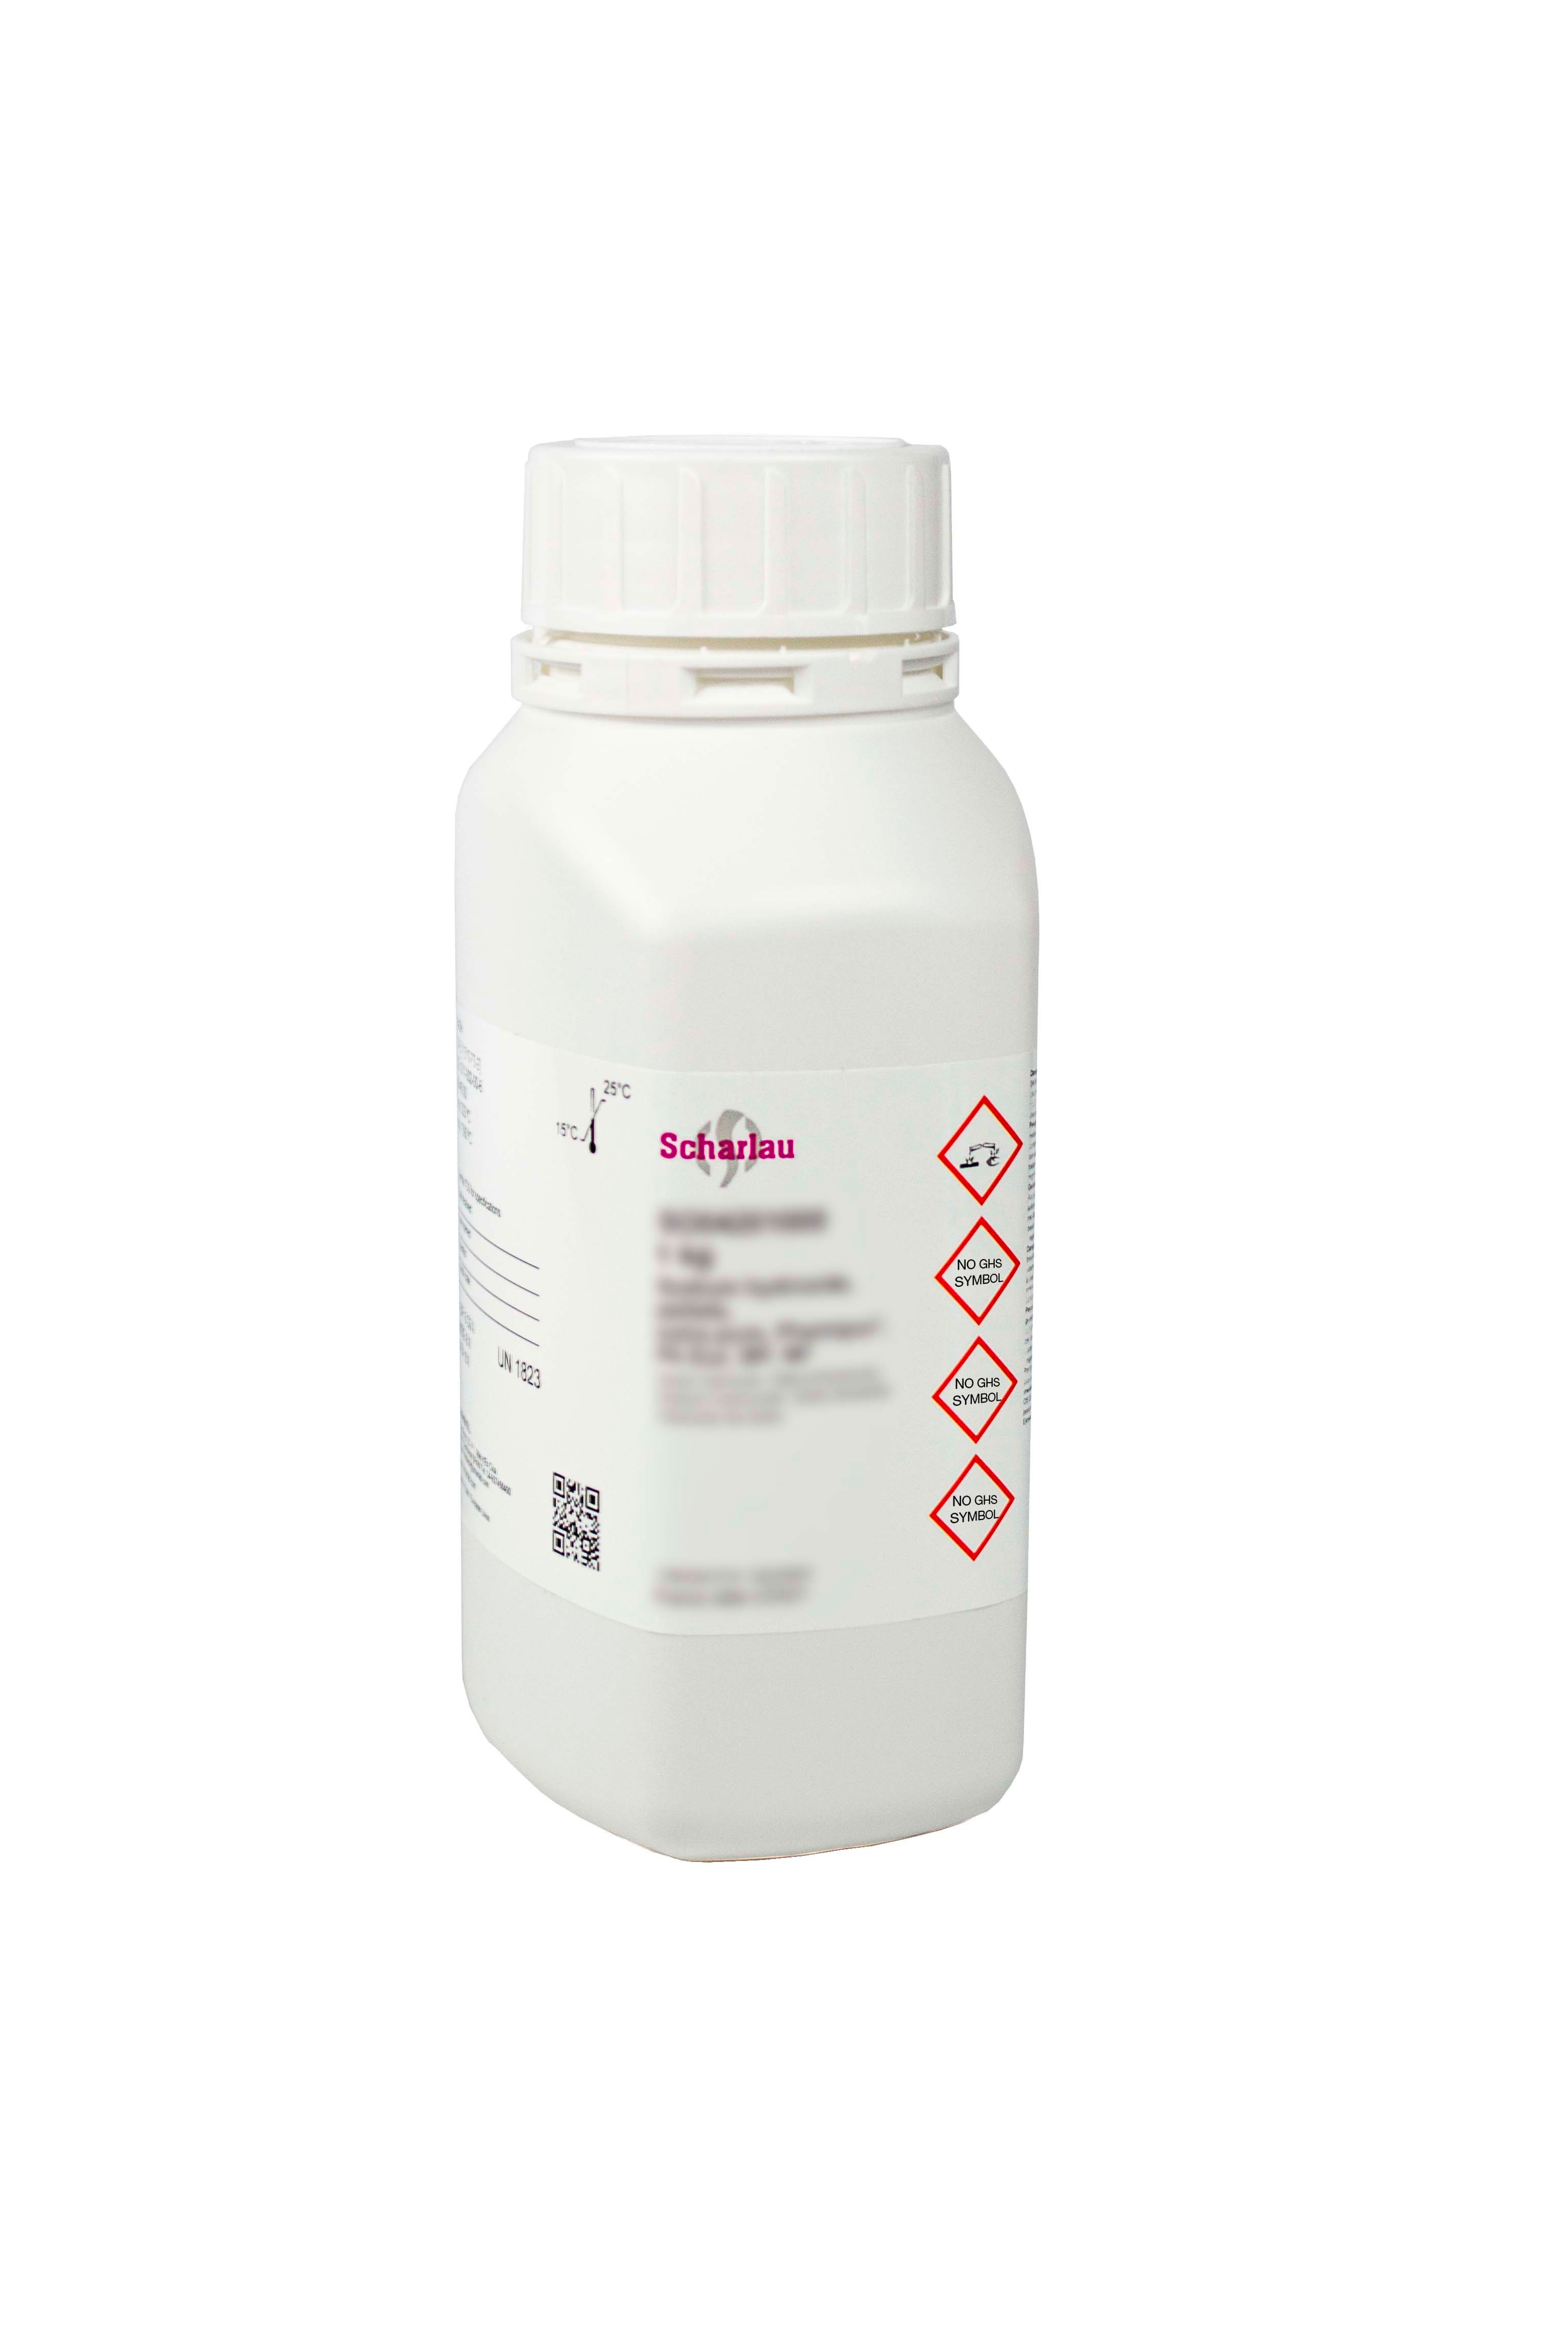 Calcio hidrogenofosfato dihidrato, Pharmpur®, Ph Eur, BP, USP